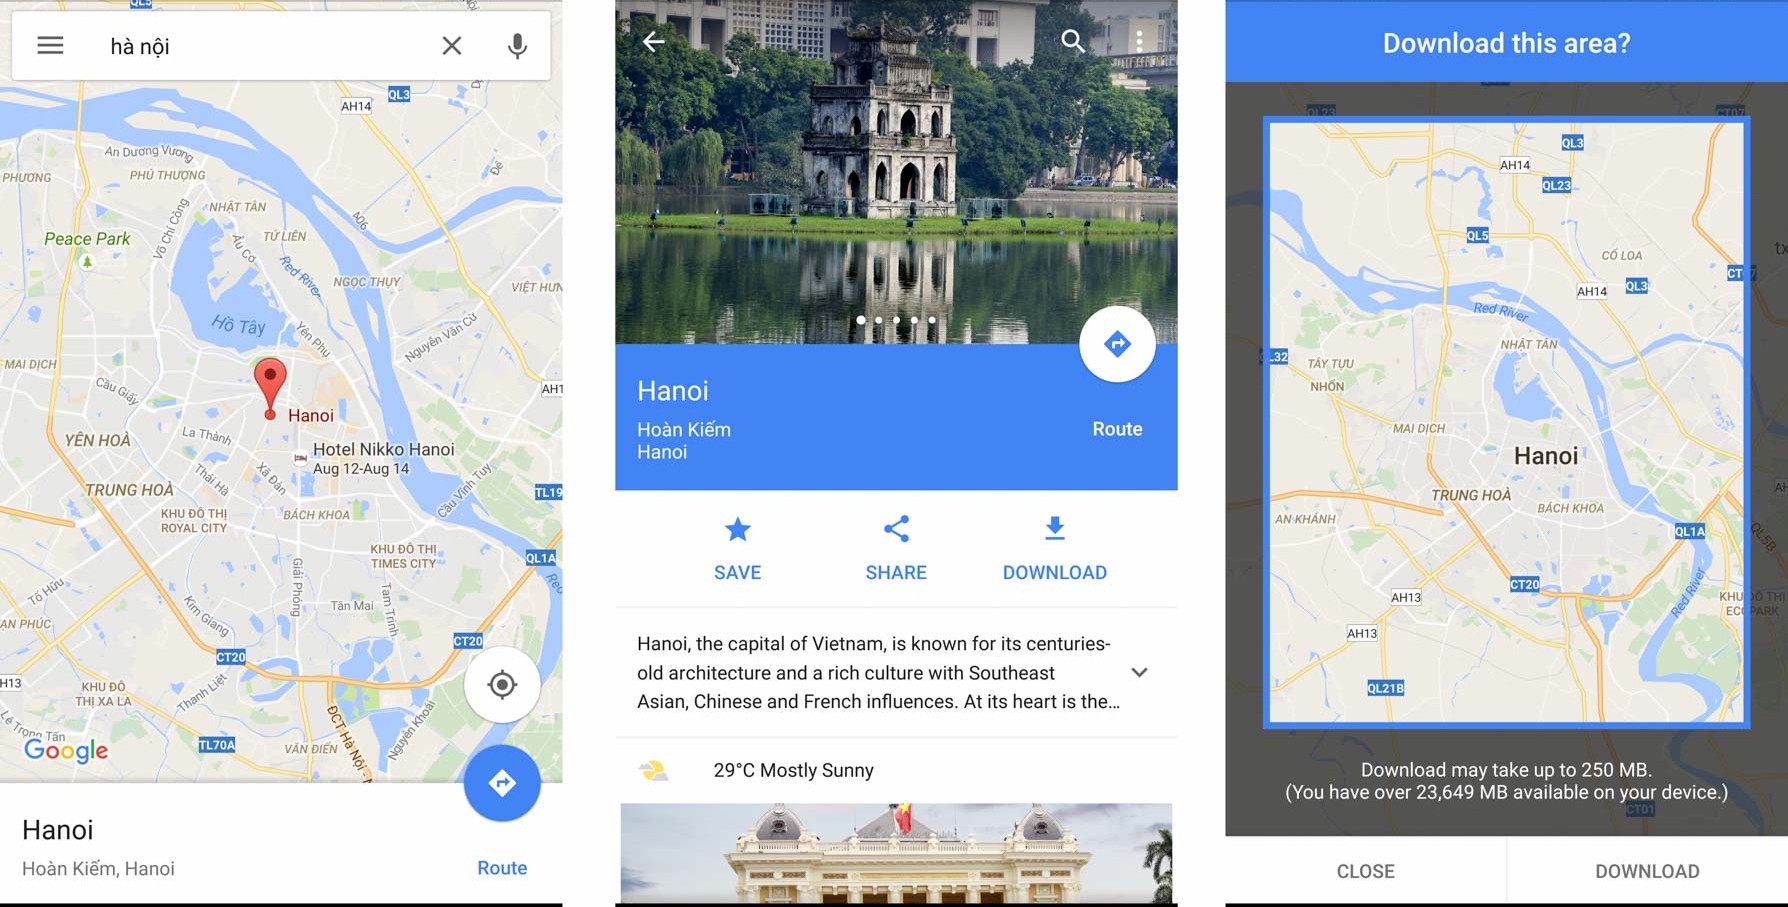 Làm chủ Google Maps với những thủ thuật đơn giản và hiệu quả.